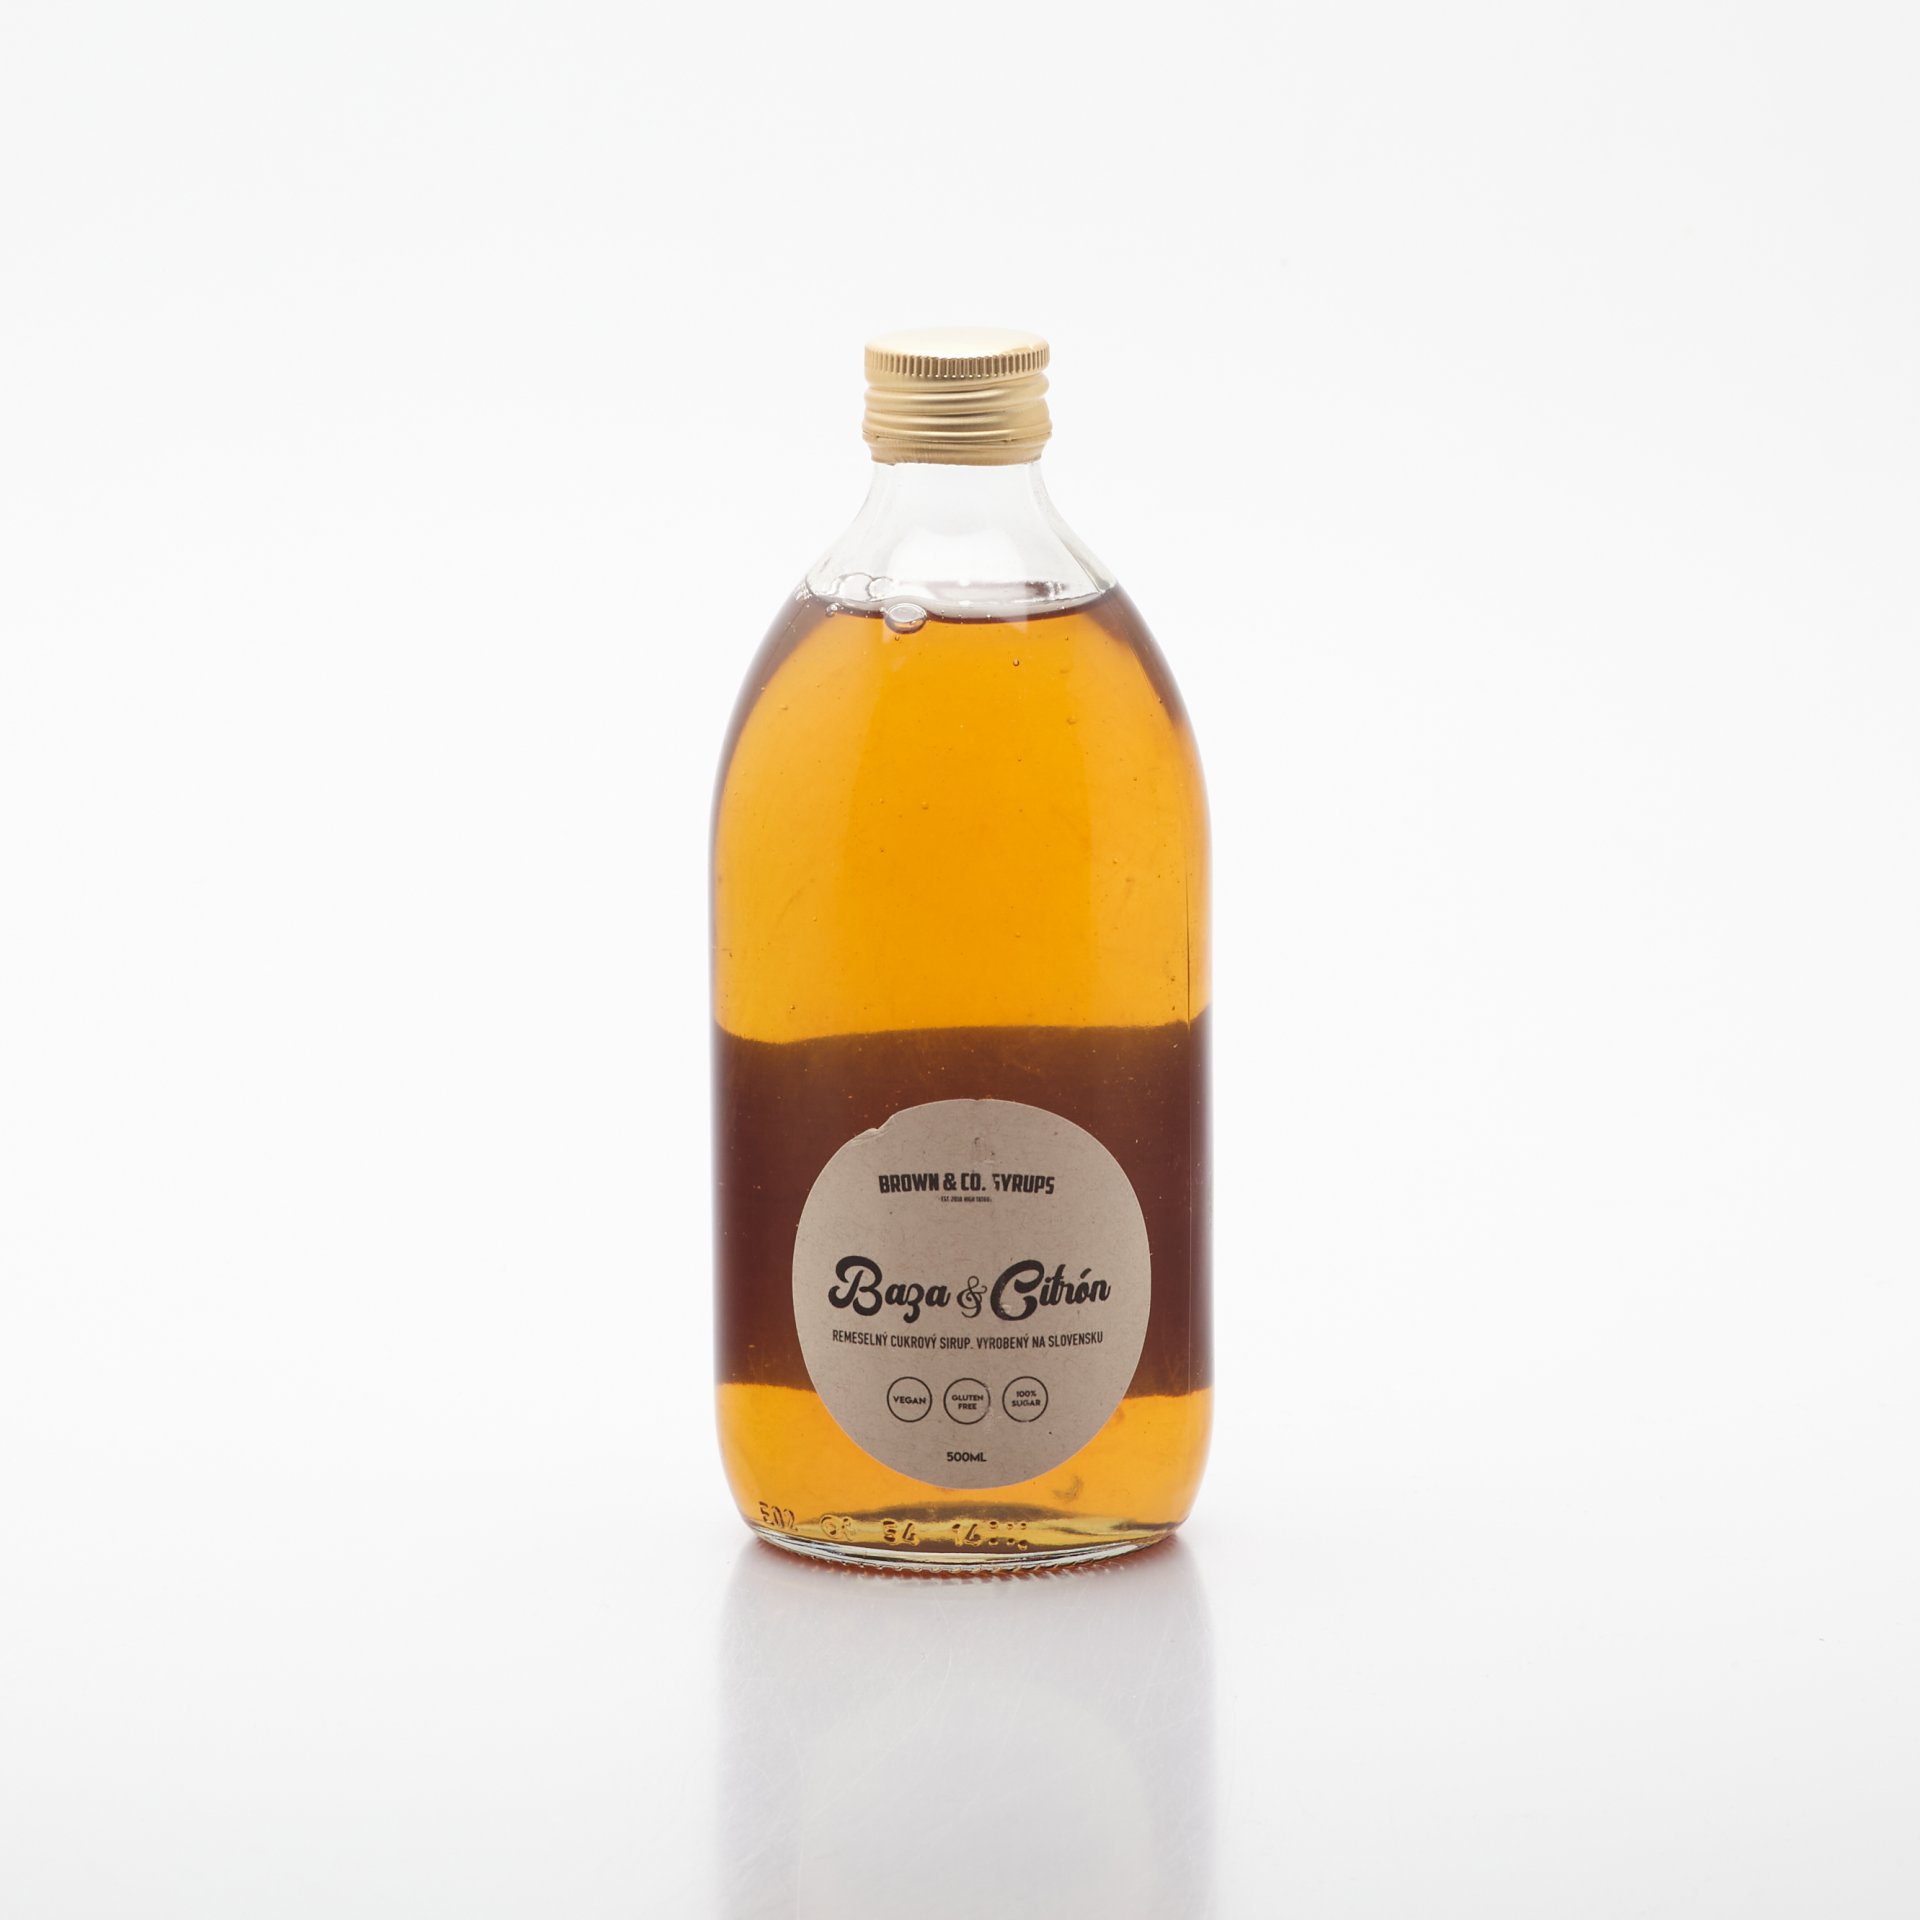 BROWN&Co. Syrups - Baza & citrón 500ml